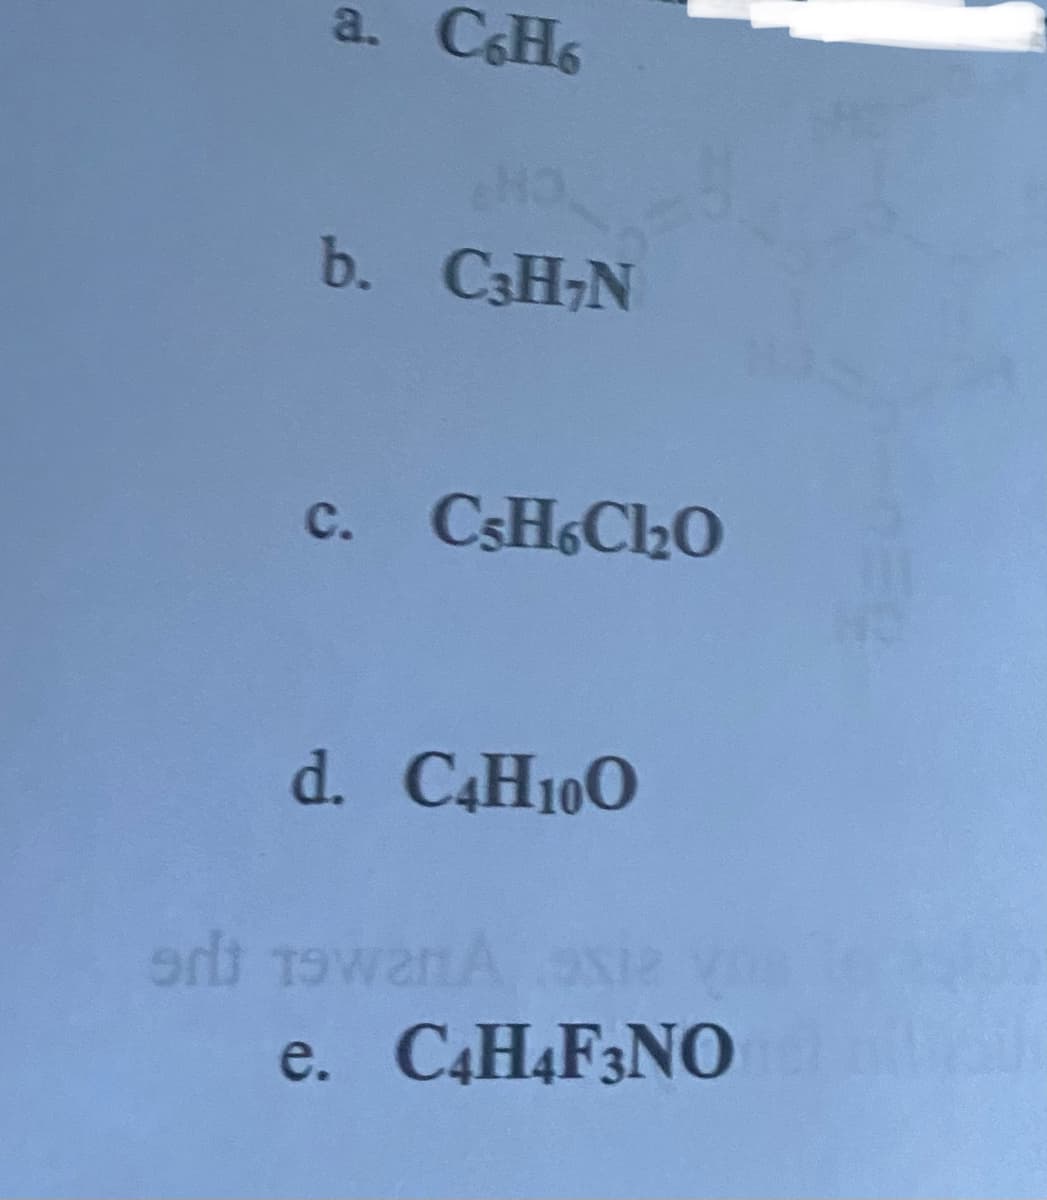 a. C6H6
b. C3H₂N
c. CsH6C1₂0
d. C4H10O
ert 19warA oxie
e. C4H4F3NO